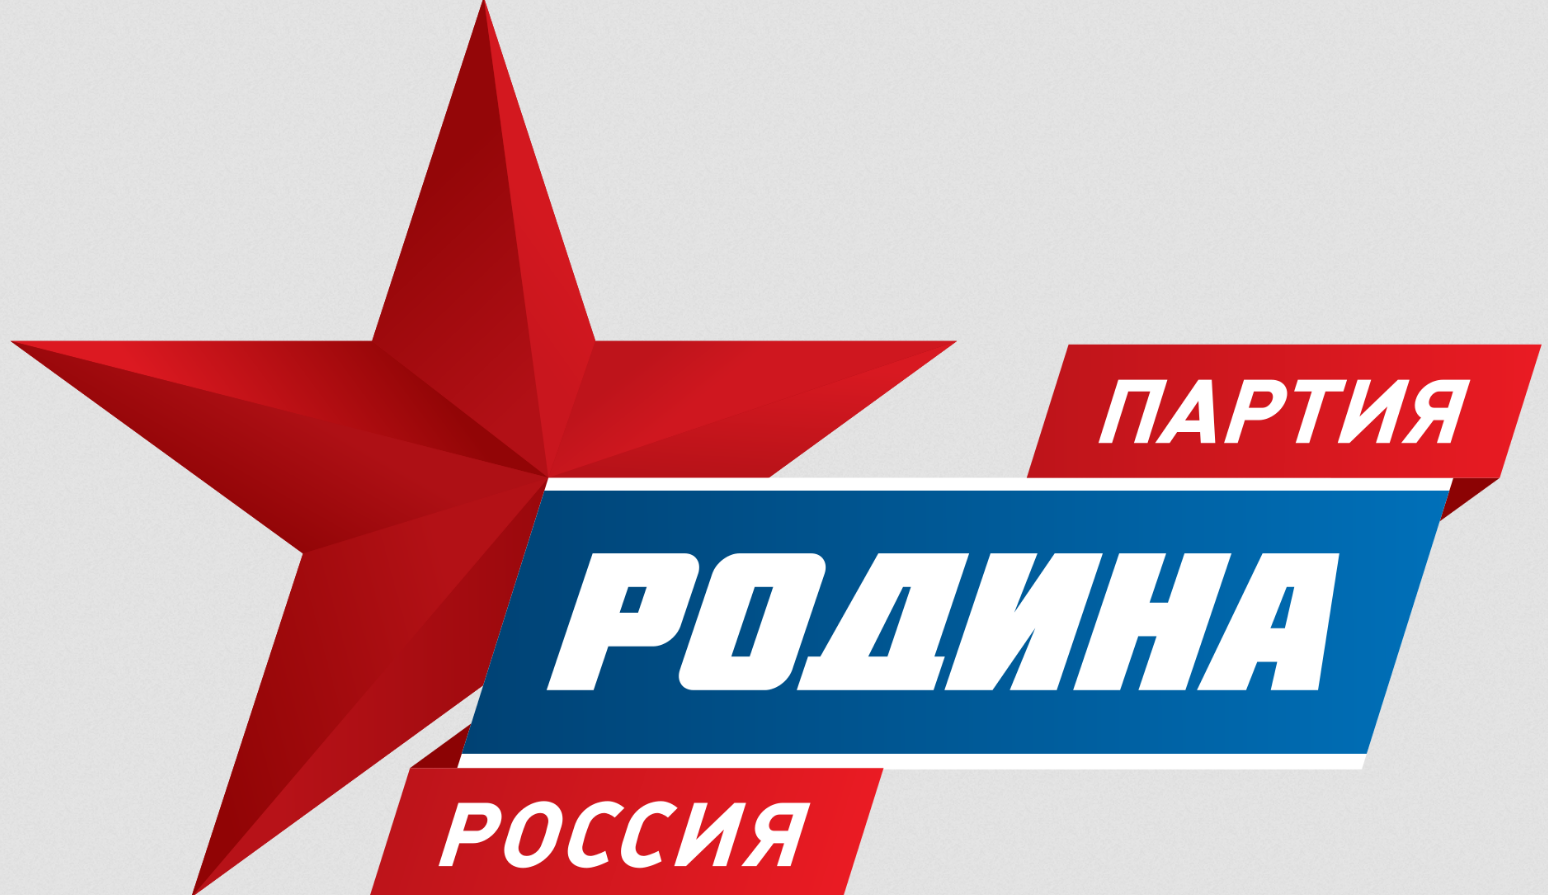 Партия «Родина» подала жалобу в ЦИК из-за снятия партийного списка с выборов в ЗакС Петербурга